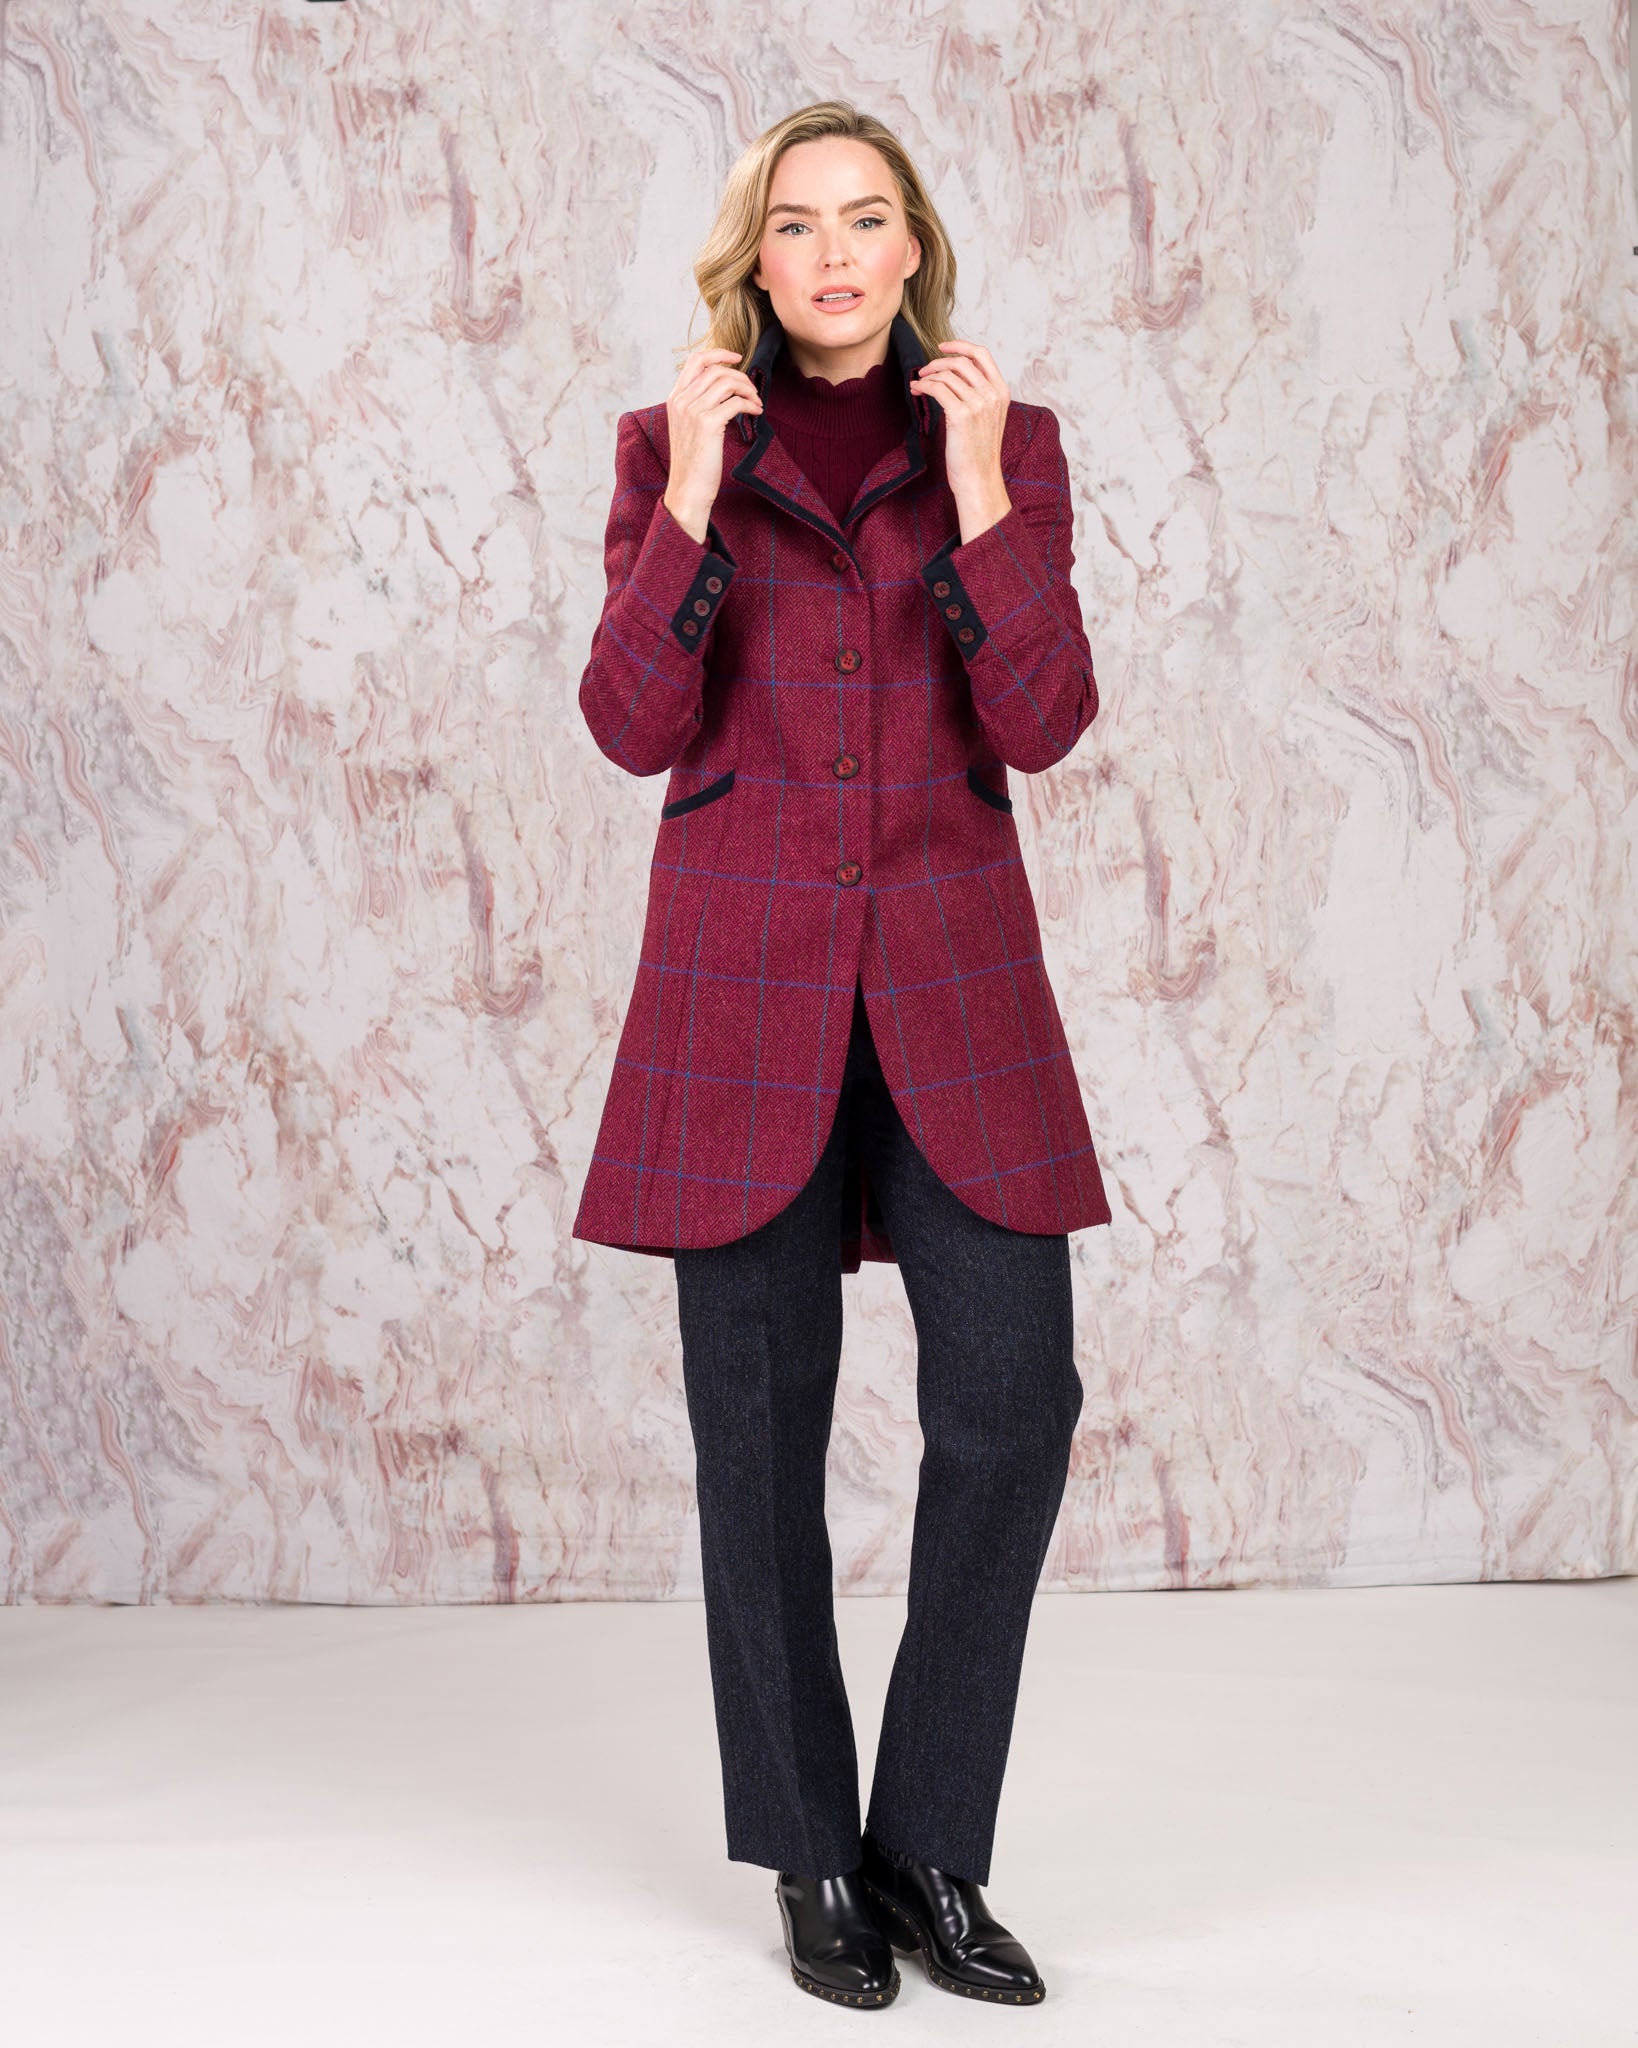 Sinead Tweed Coat - Rose Herringbone Check